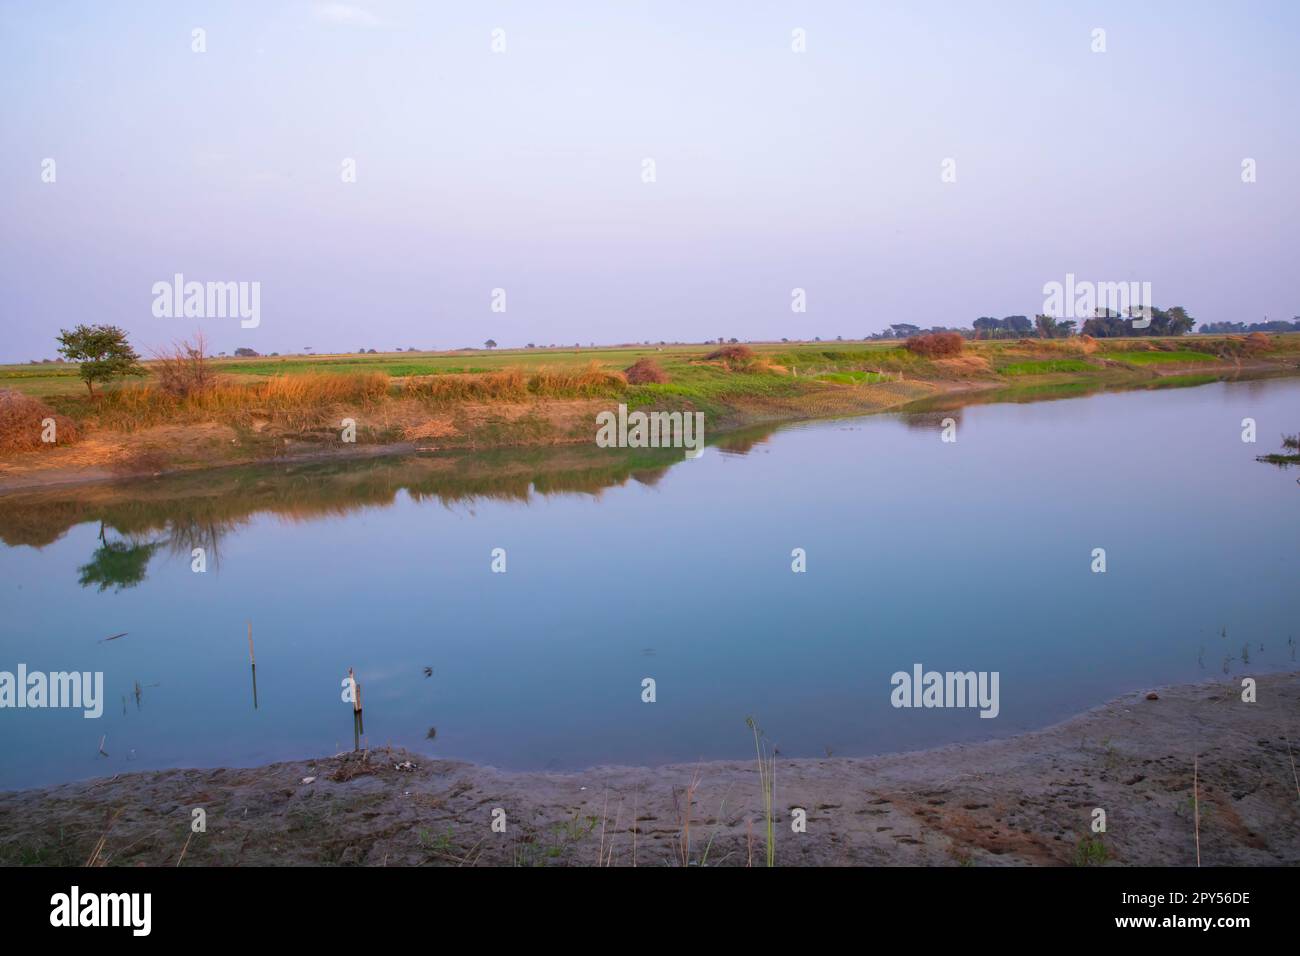 Arial View Canal con erba verde e vegetazione riflessa nelle acque vicino Padma fiume in Bangladesh Foto Stock